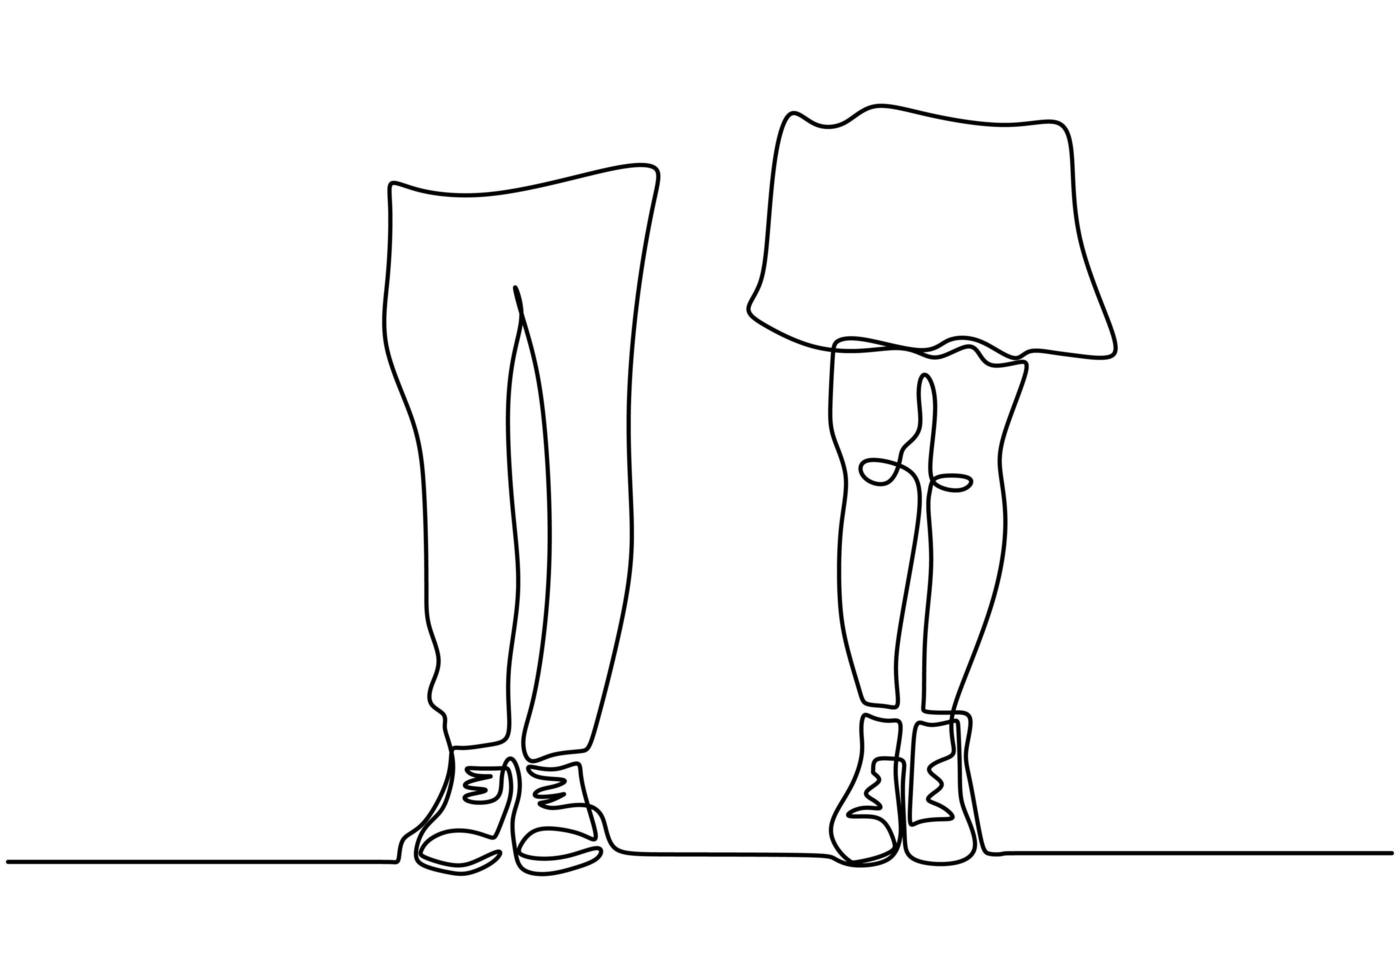 desenho de linha contínua. pernas de casal romântico. design de conceito de tema de amantes. minimalismo desenhado de uma mão. vetor